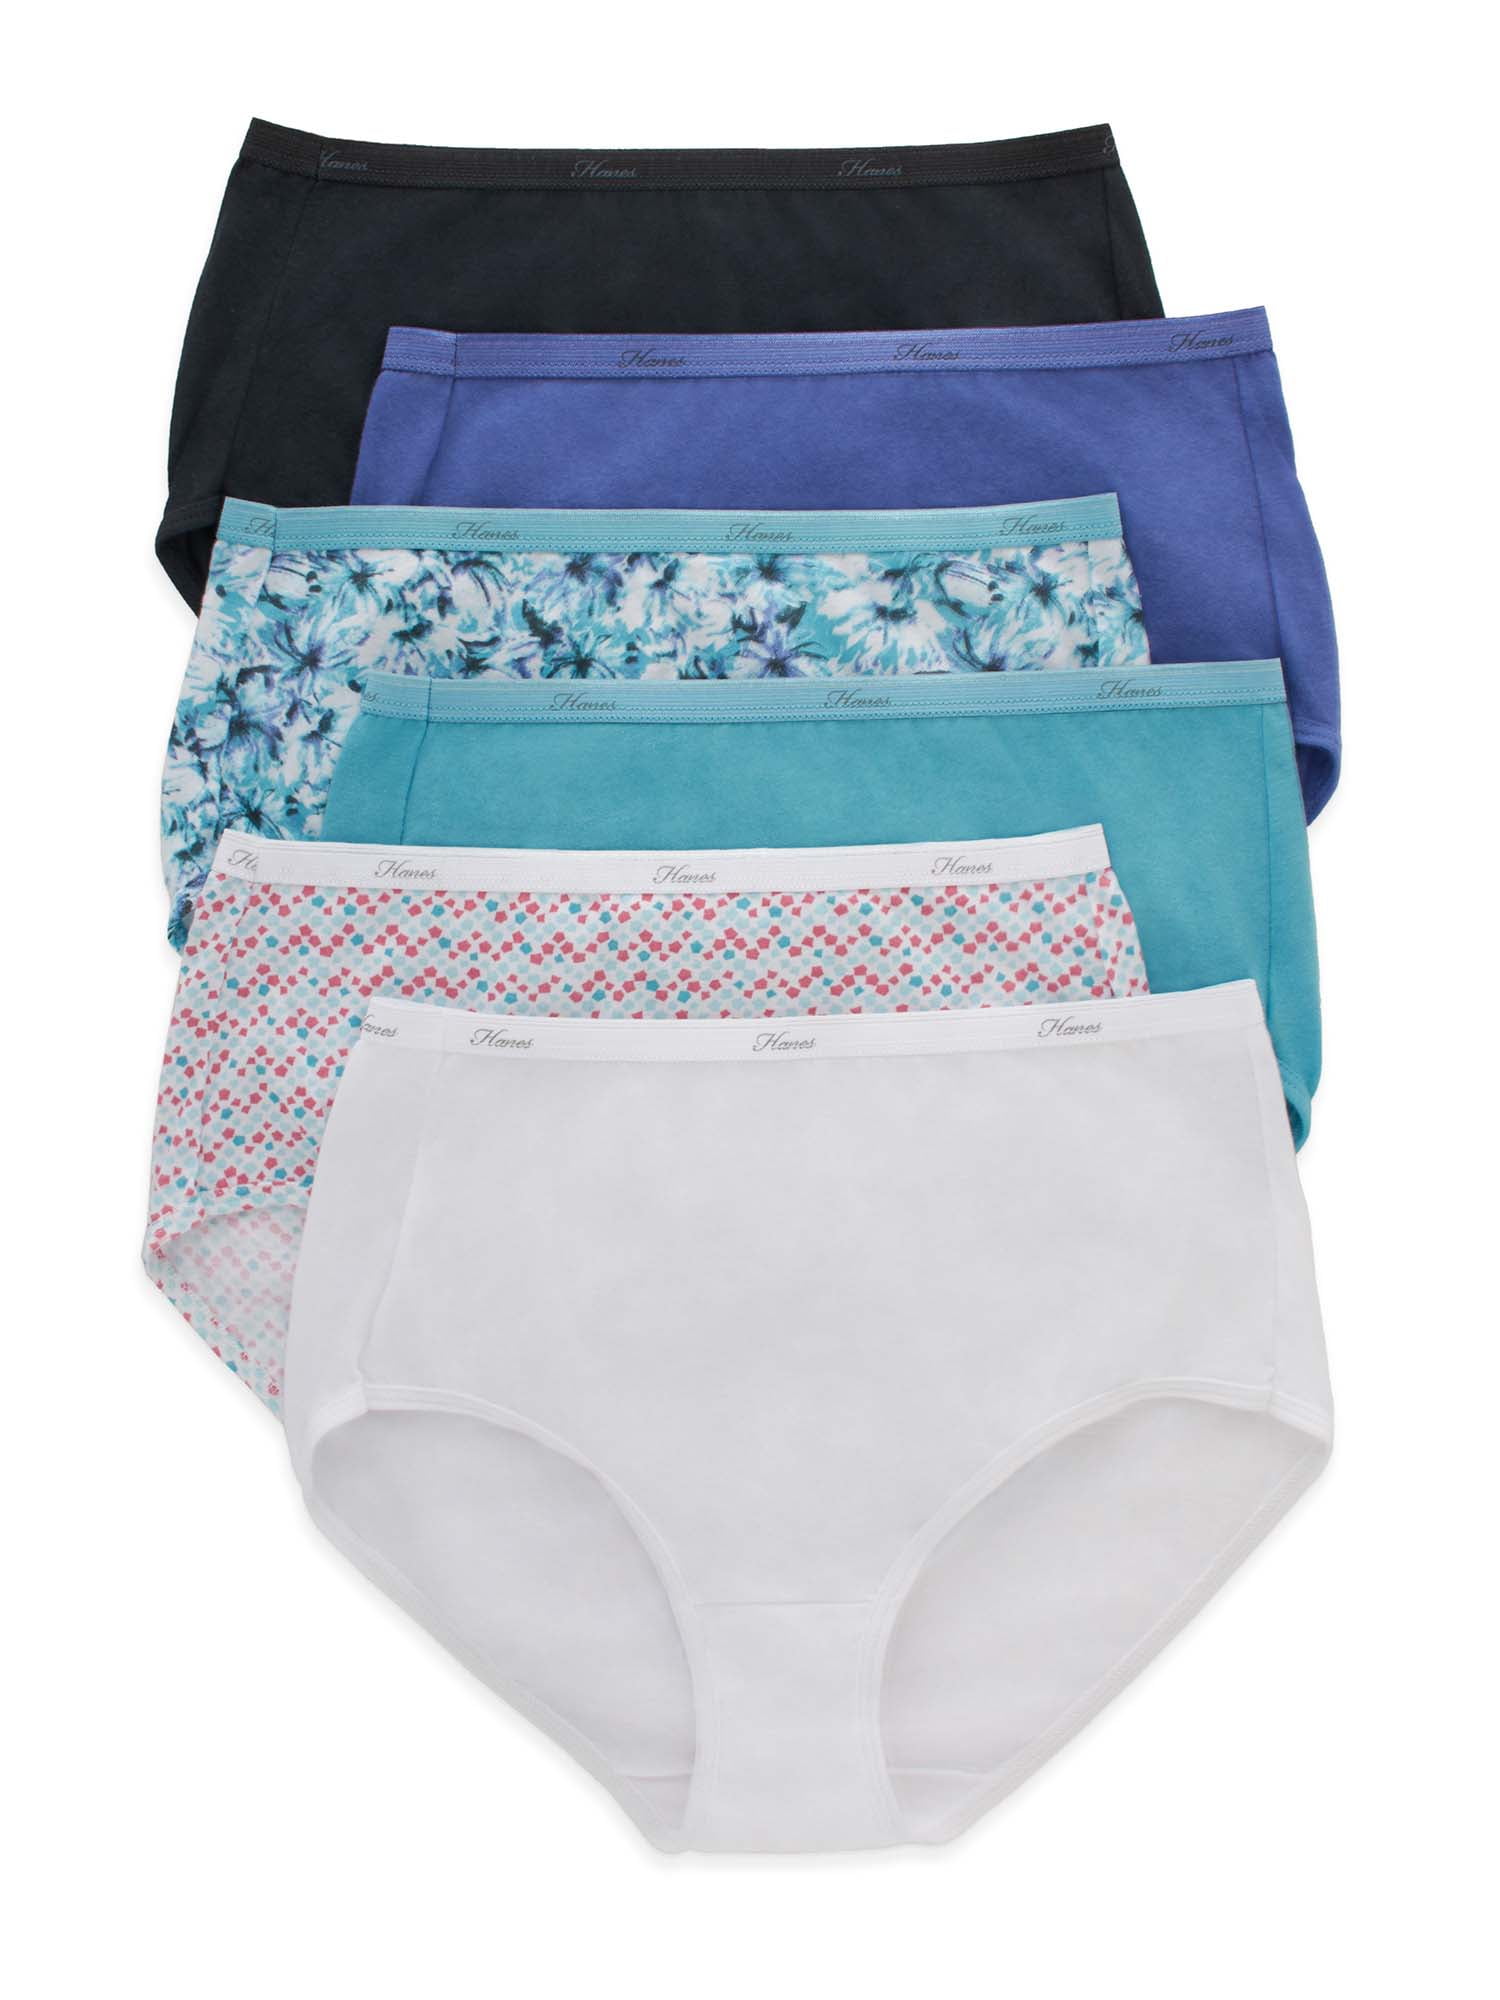 Hanes Cool Comfort Cotton Brief Underwear for Women - 6 Pack